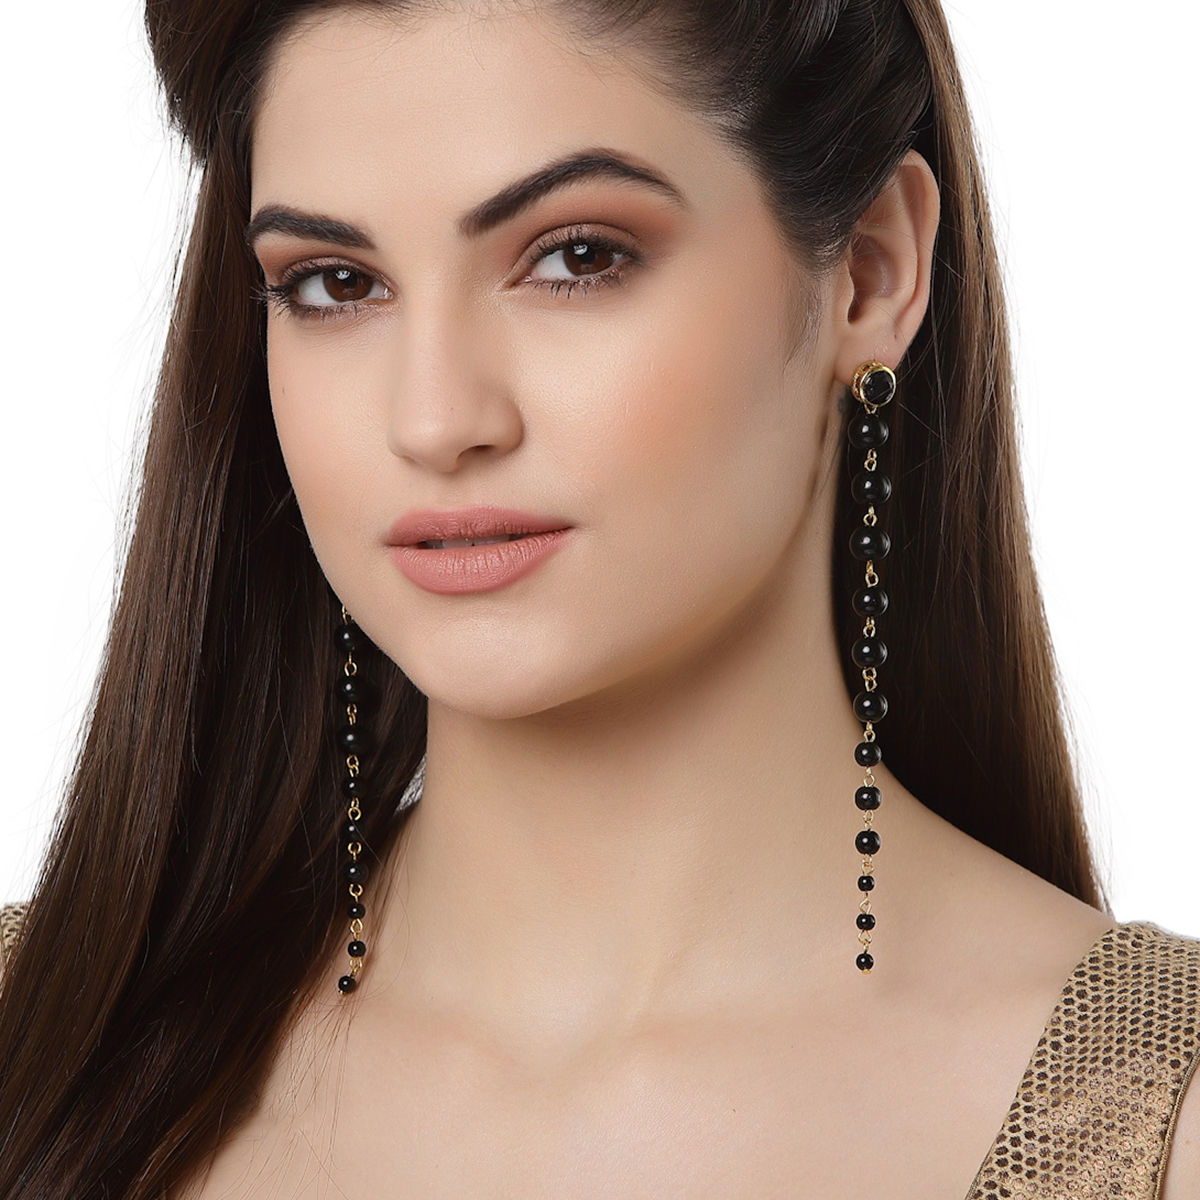 Luxury Rhinestone Vintage Tassel Earrings Drop Earring For Women Party  Jewelry Black Chains Long Dangle Earrings